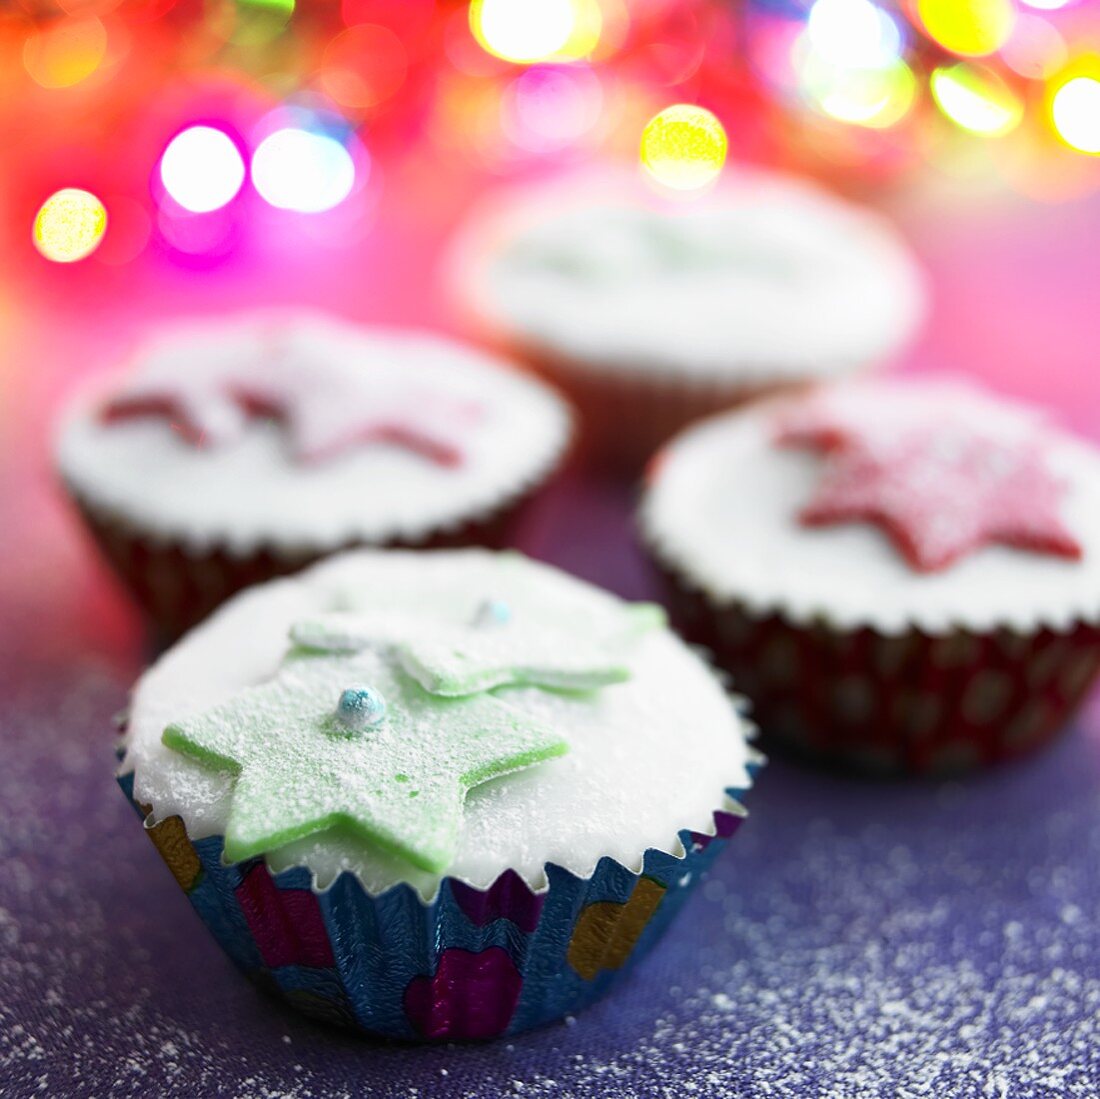 Fairy Cakes mit Zuckerglasur & Marzipansteren zu Weihnachten